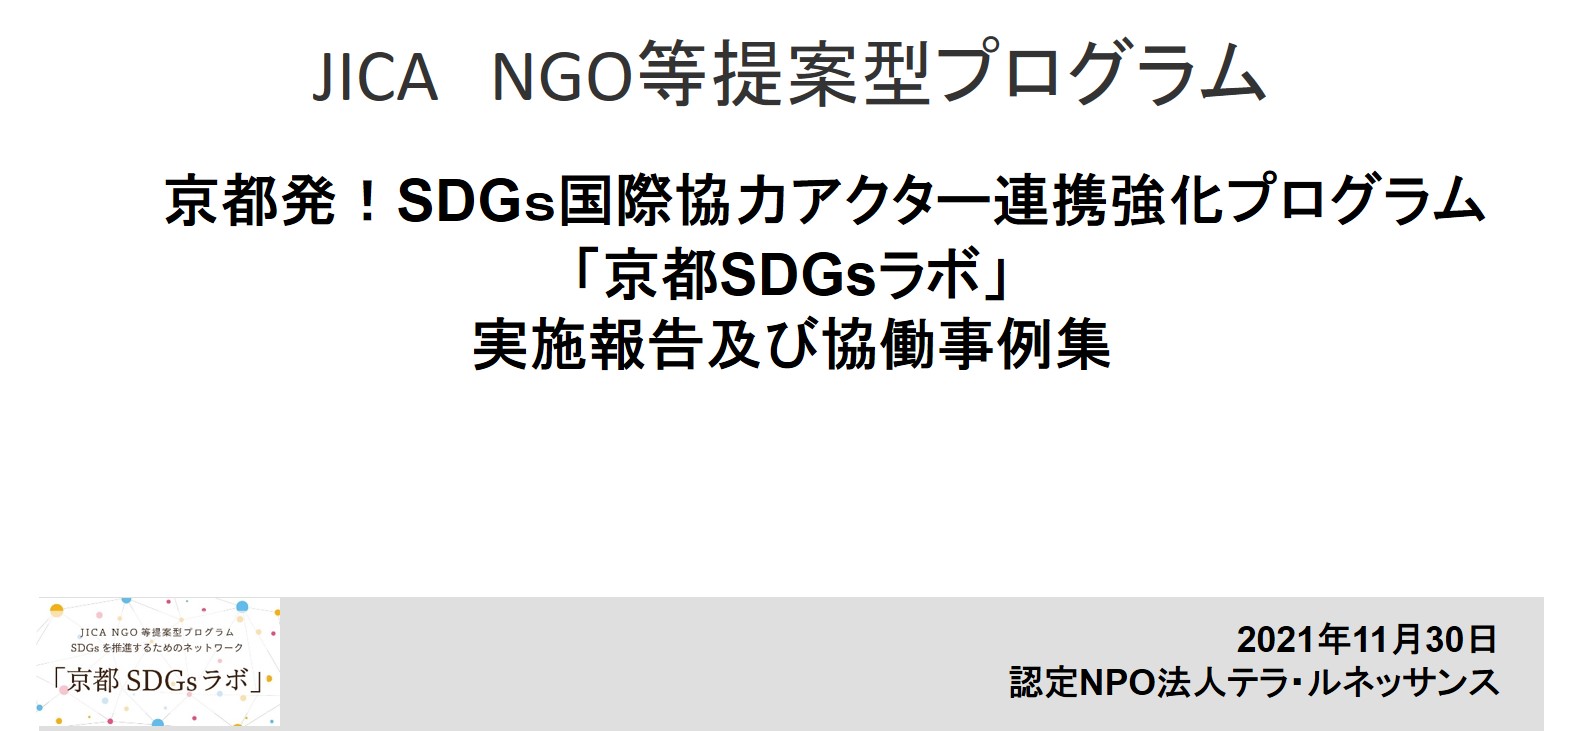 【京都SDGsラボ】事業報告と協働事例のご紹介